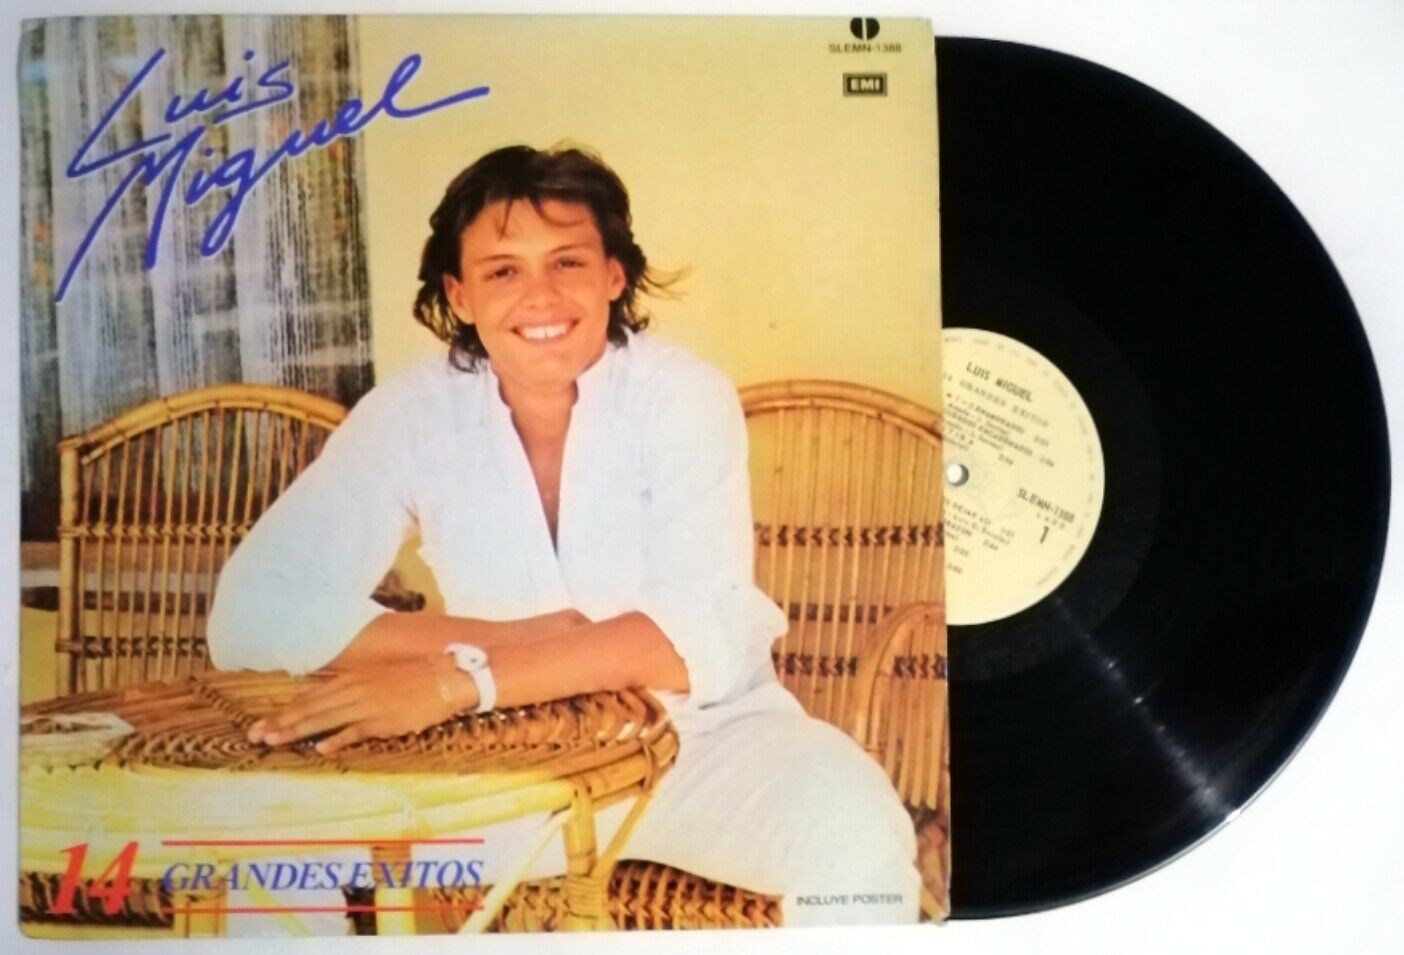 popsike.com - LUIS MIGUEL 14 Grandes Exitos LP Vinyl Compilation 1986  MEXICO EMI Ya Nunca Mas - auction details